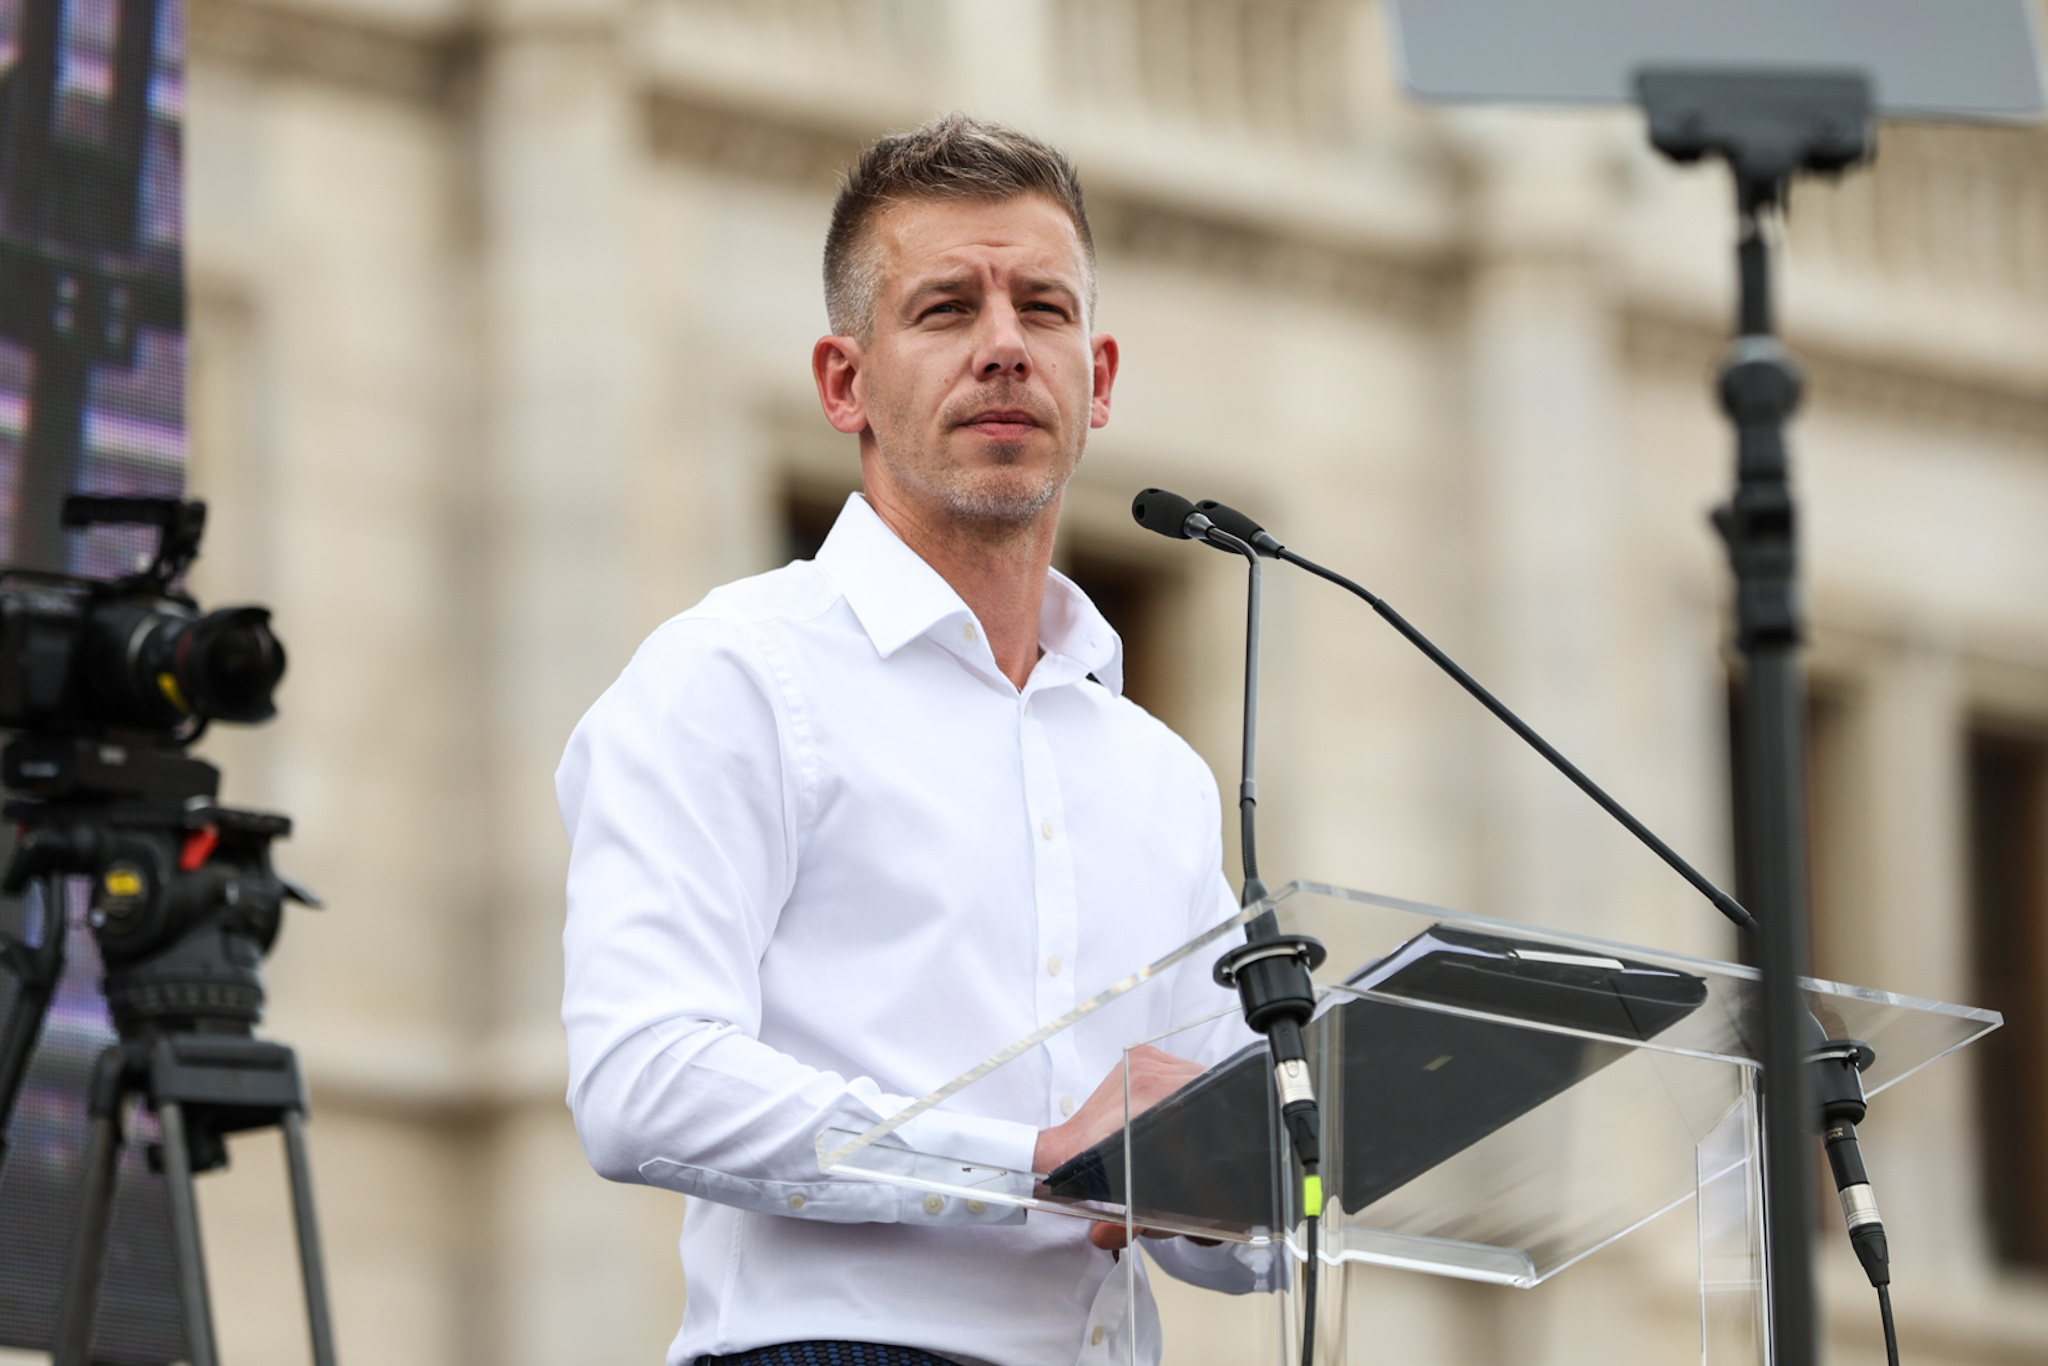 Magyar Péter reagált a vádakra, miszerint a NER-t segítik, ha ellenzéki vezetésű kerületekben indítanak polgármester-jelölteket